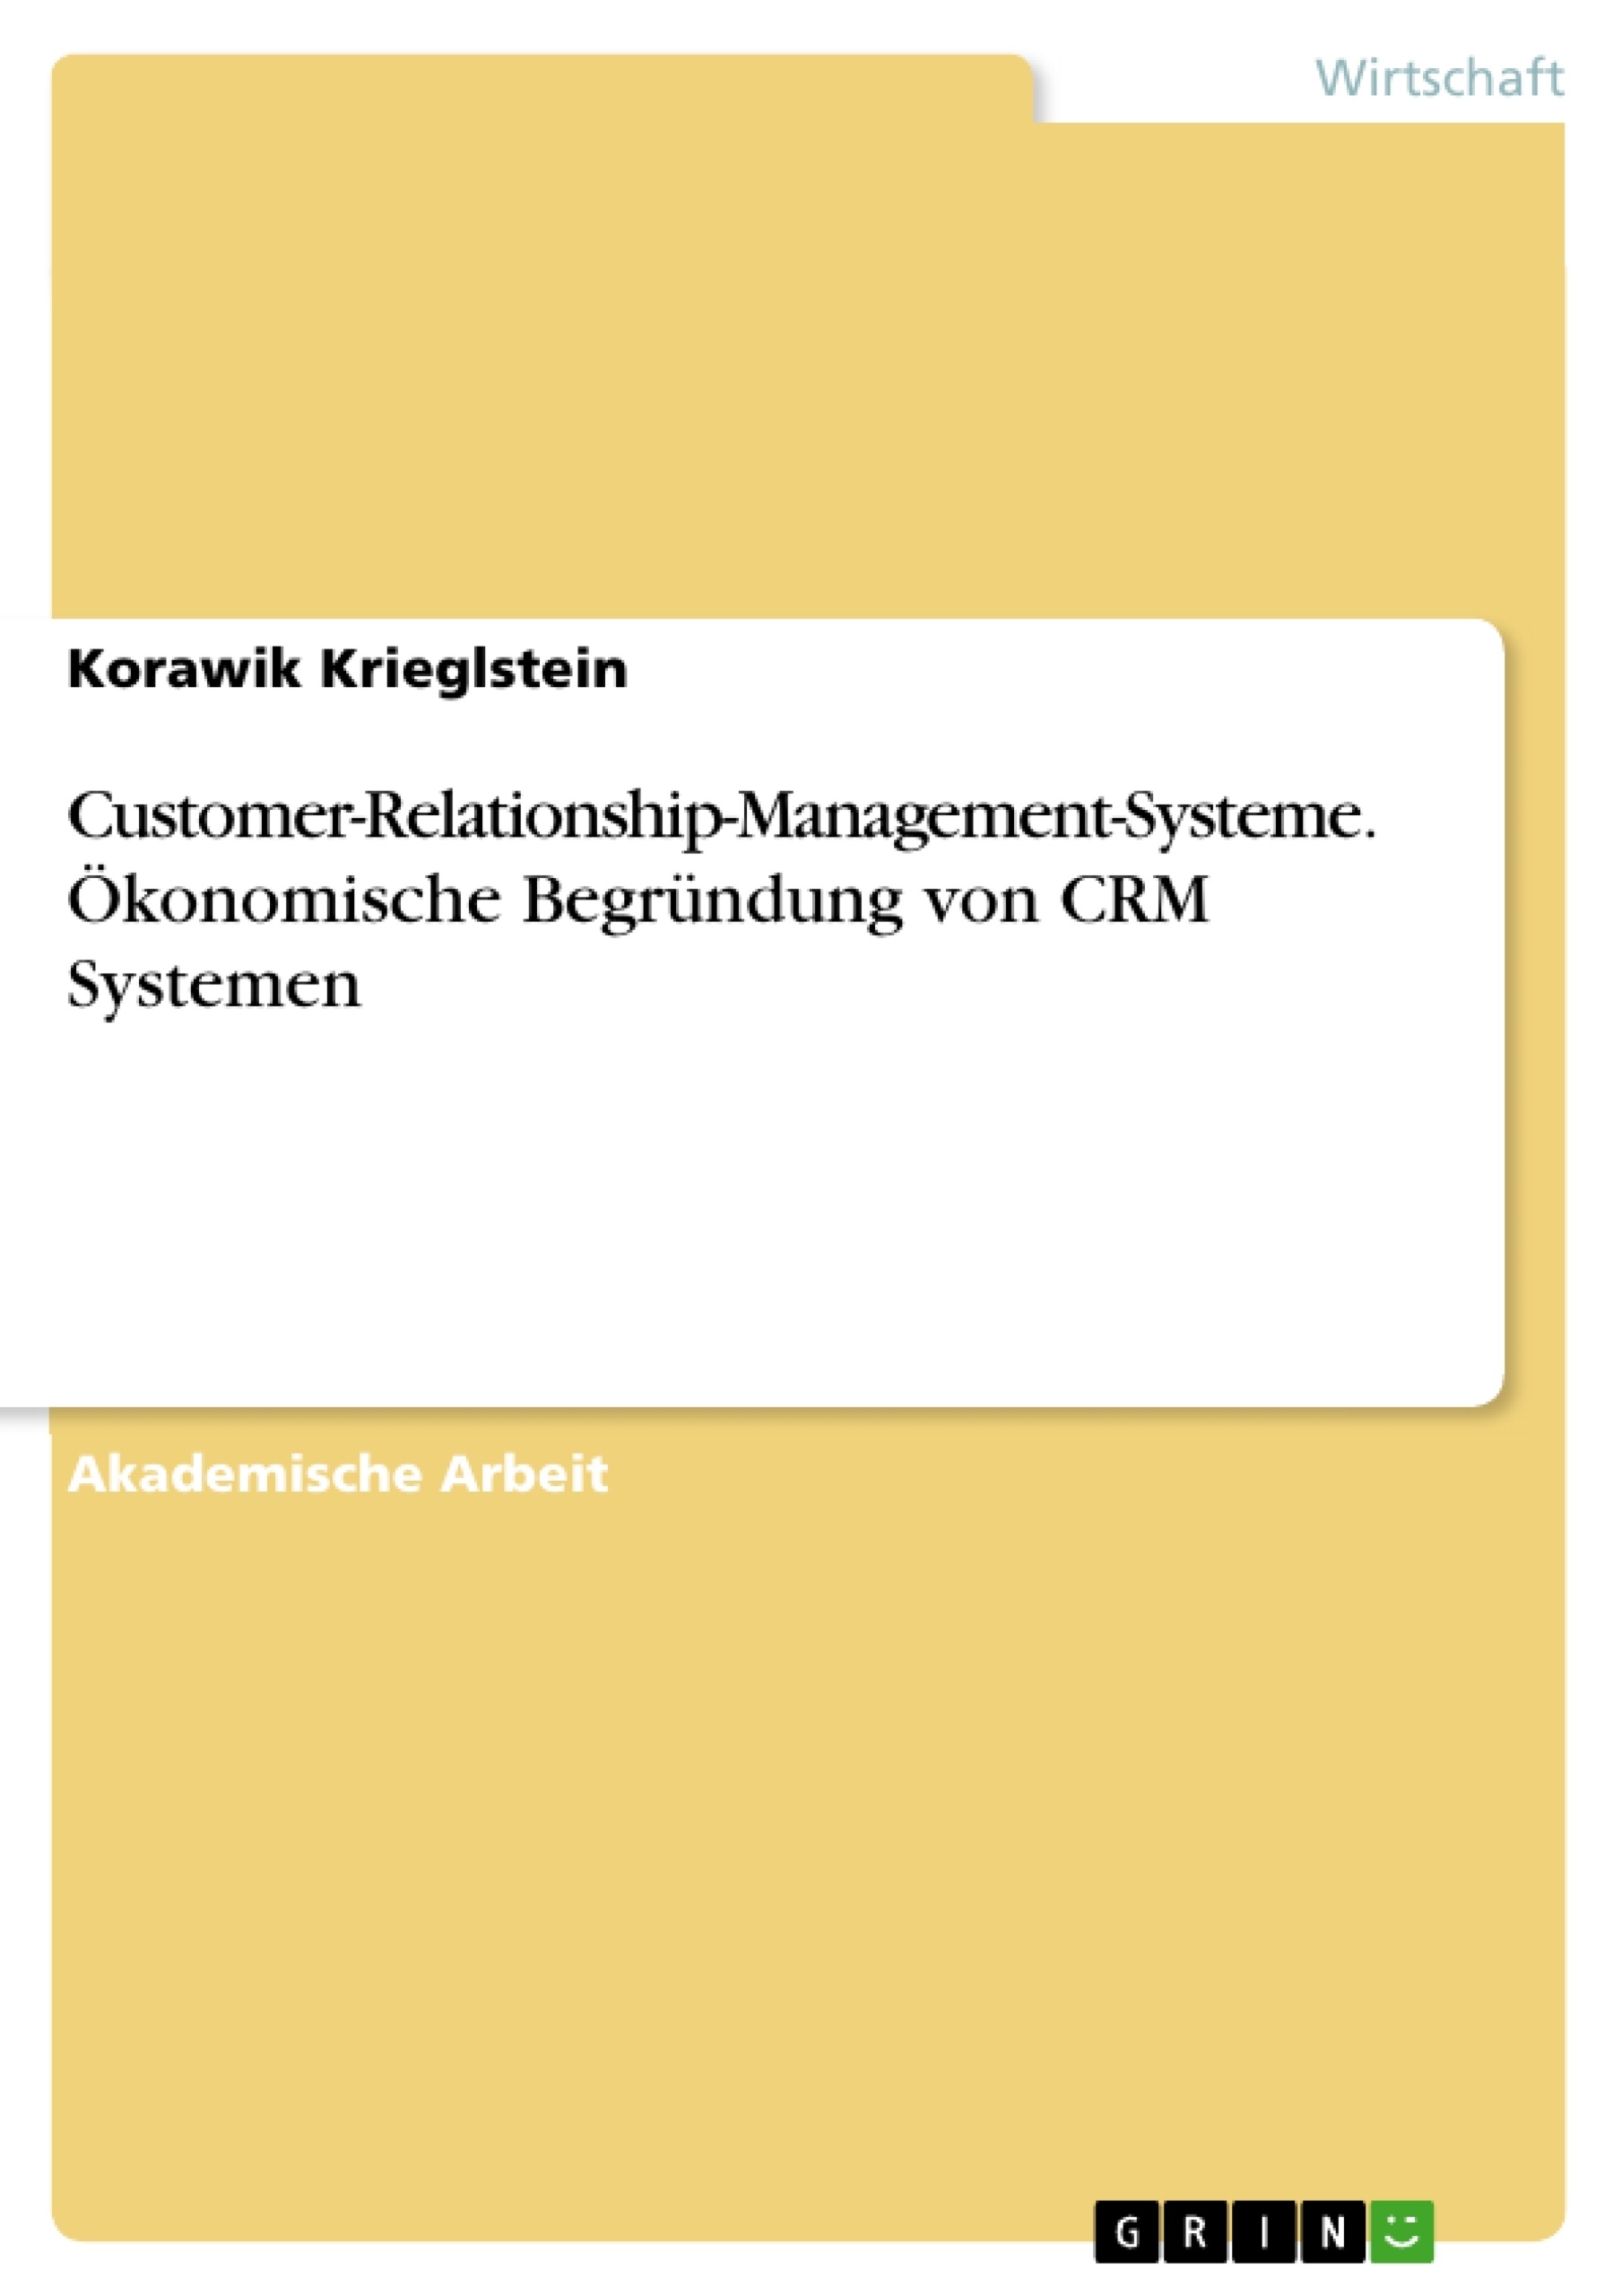 Título: Customer-Relationship-Management-Systeme. Ökonomische Begründung von CRM Systemen